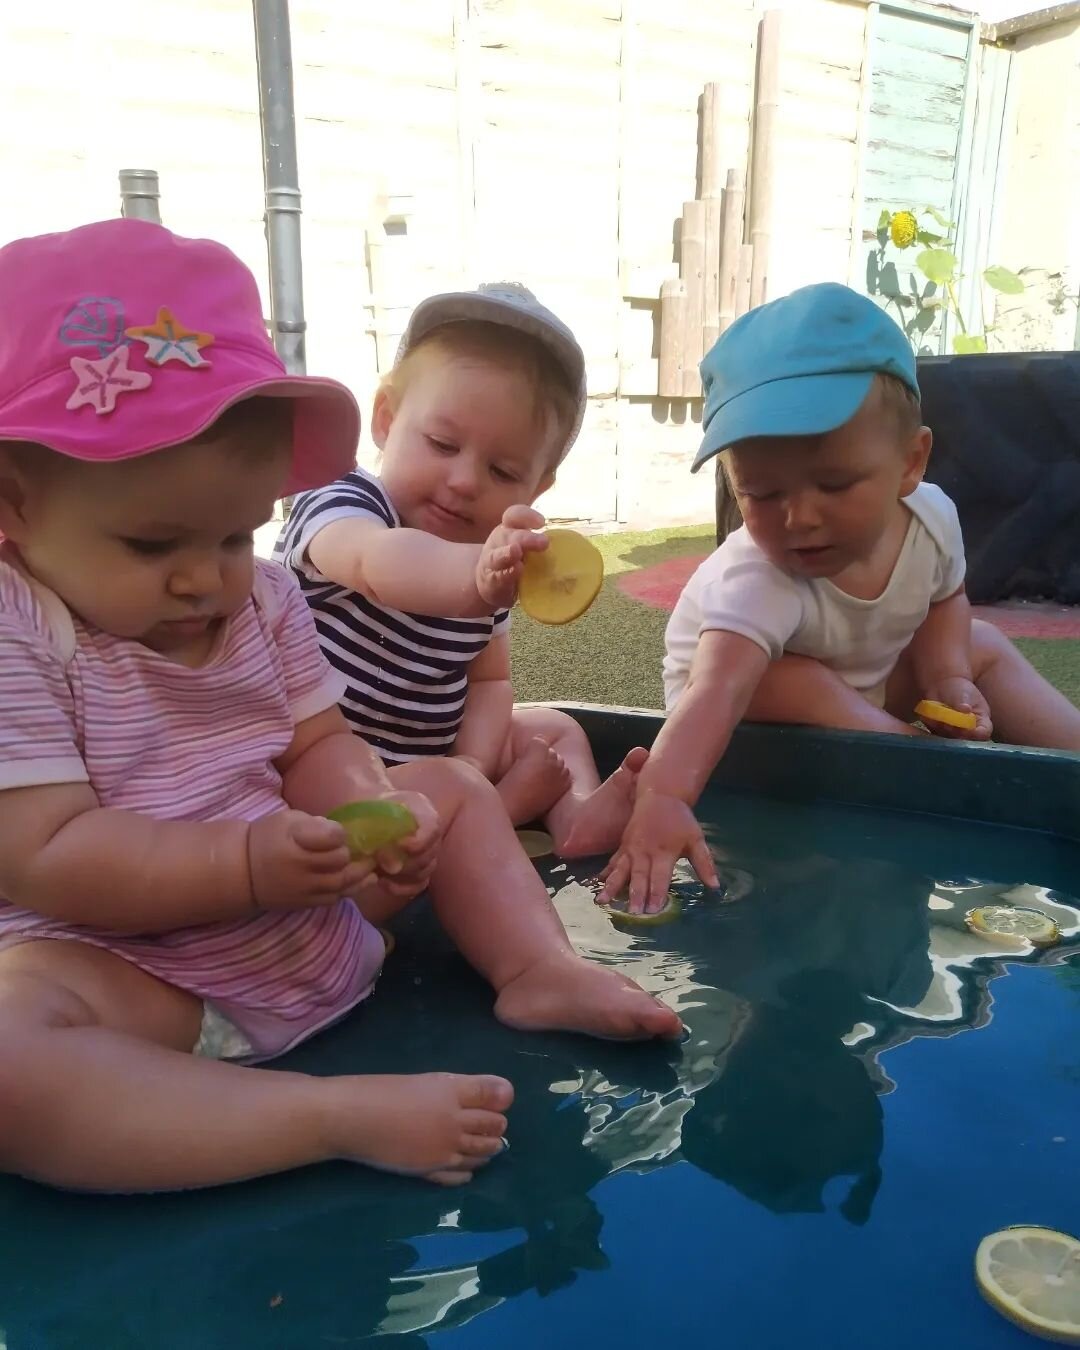 Babies exploring their senses using lemons and limes 🍋 

#babies #babyplay #babysensory #exploringsenses #lemonandlime #foodplay #sour #waterplay #senses #taste #feel #earlyyearslearning #learningthroughplay #eyfs